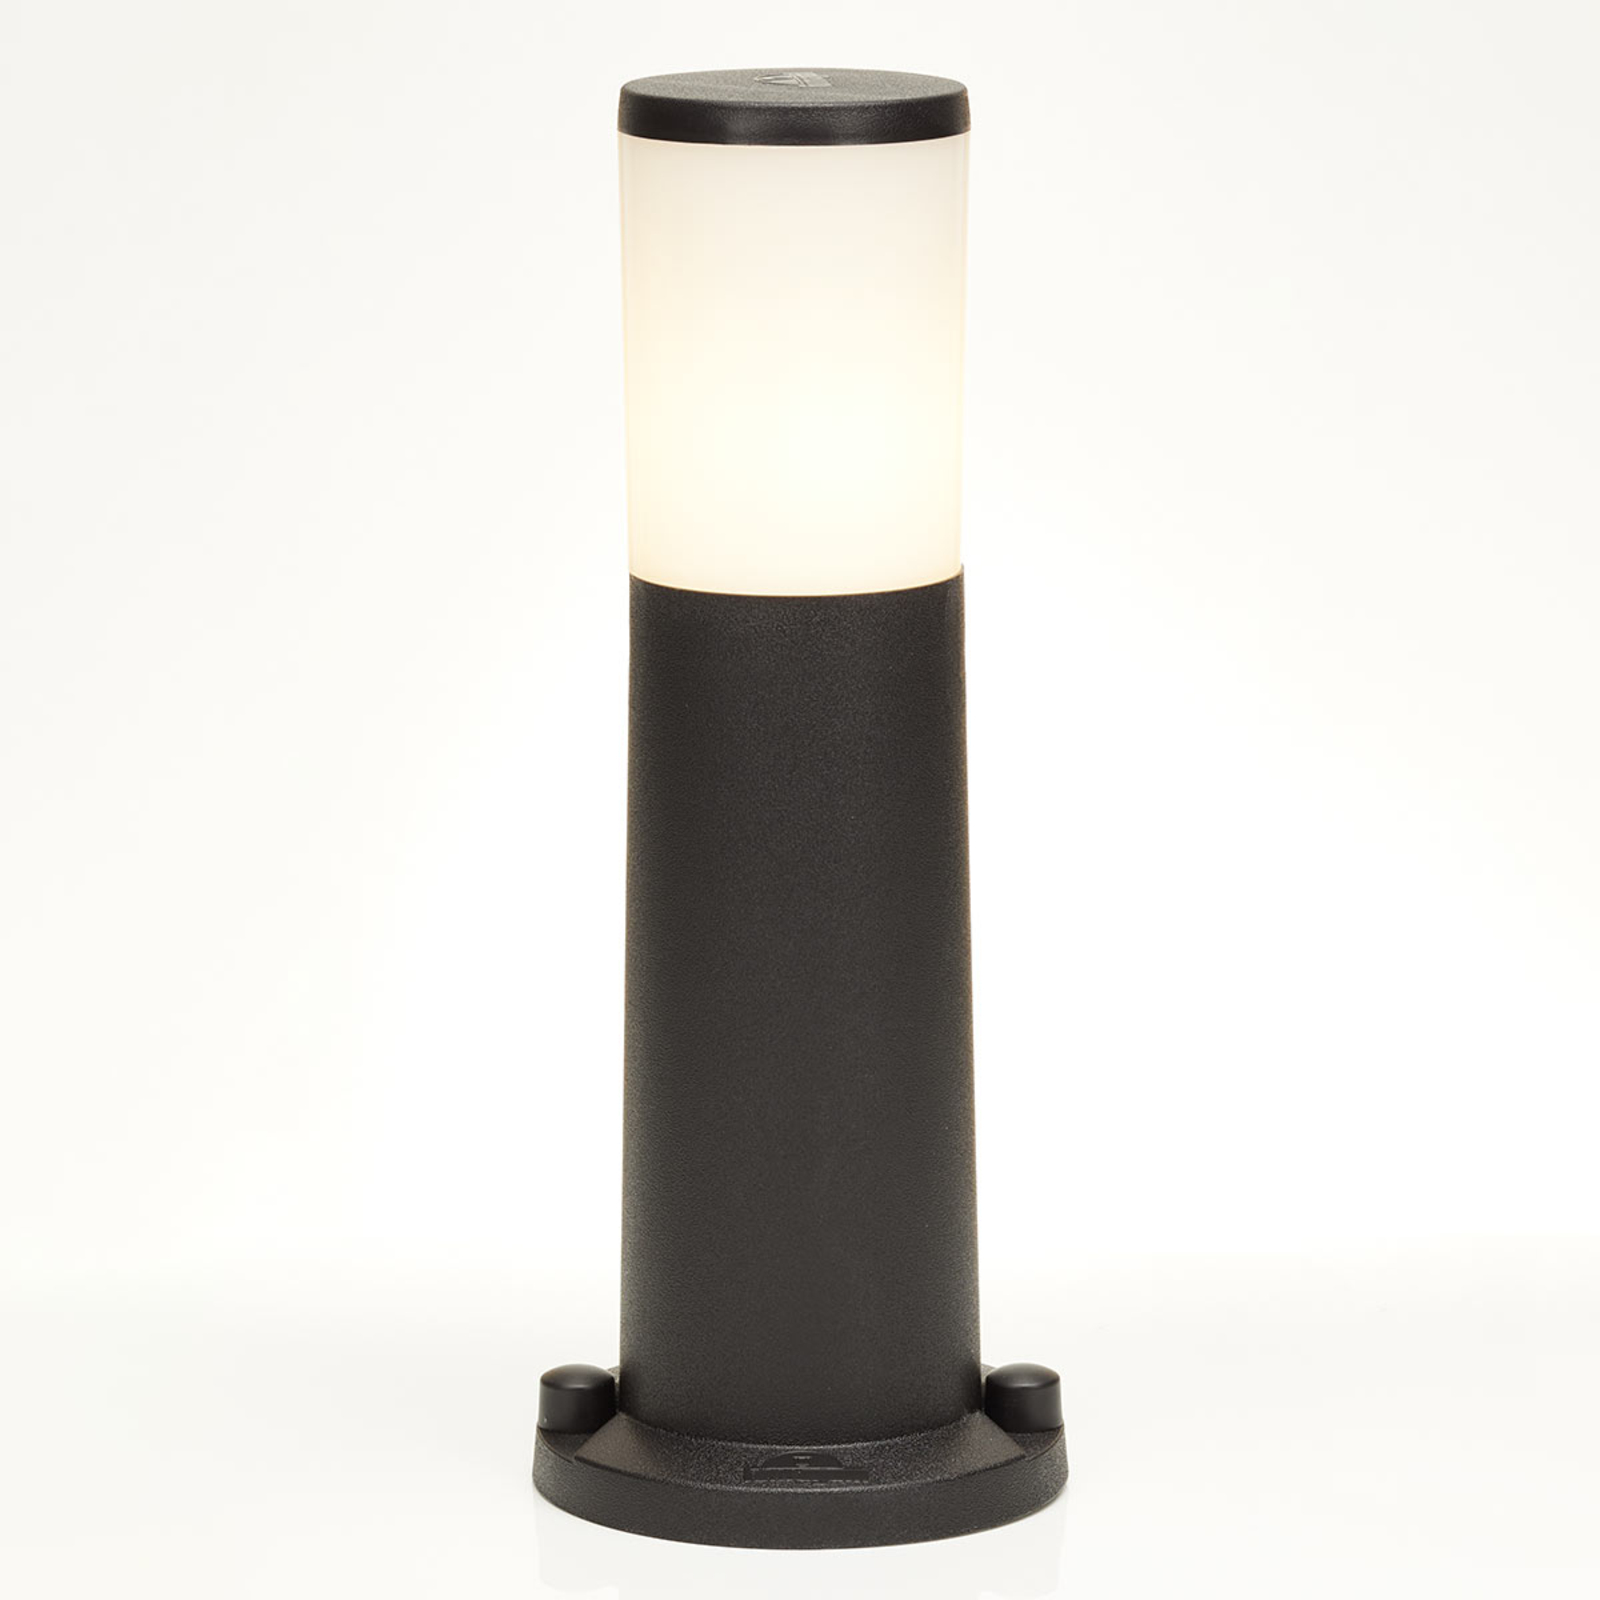 Lampa Amelia LED s podstavcem, CCT, černá, výška 40 cm